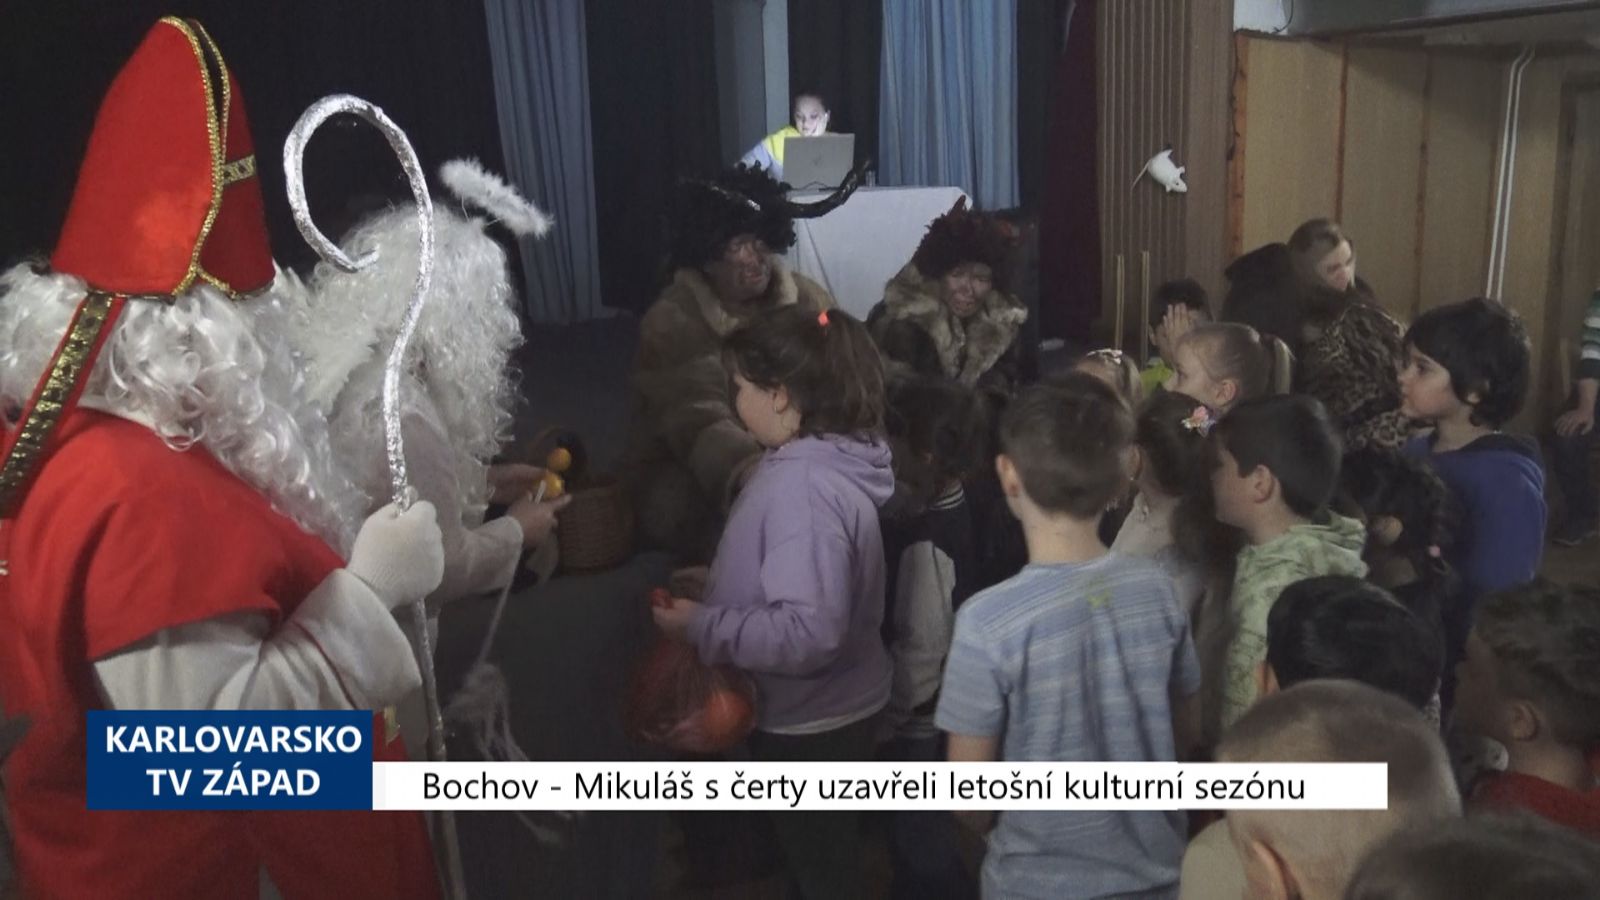 Bochov: Mikuláš s čerty uzavřeli letošní kulturní sezónu (TV Západ)